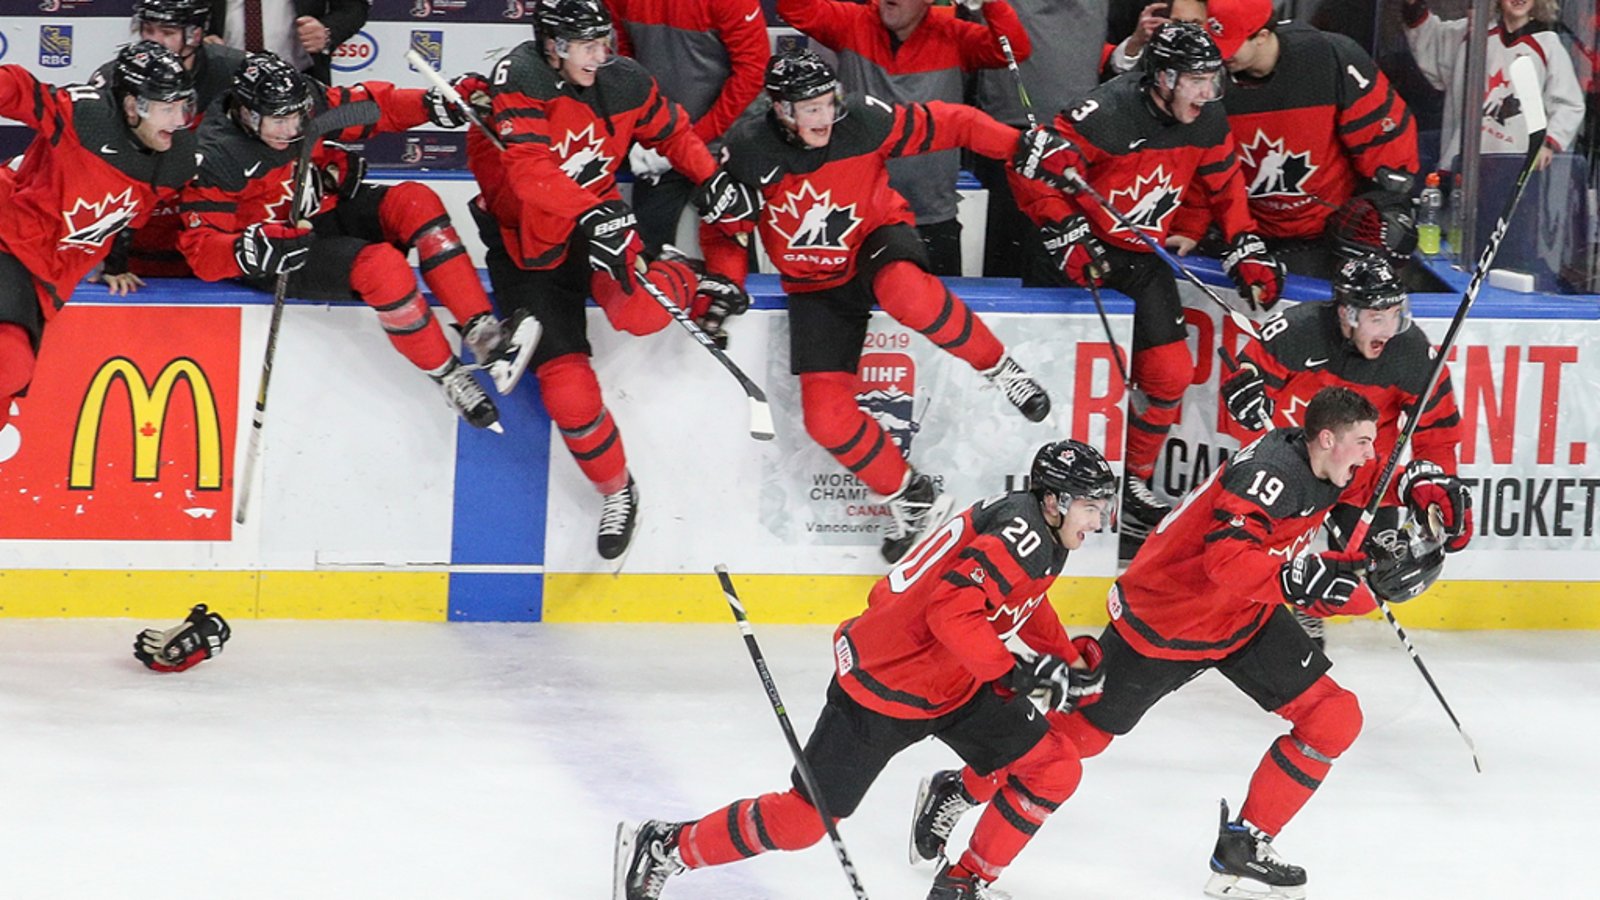 Cinq joueurs de Team Canada Junior 2018 pourraient être accusés de viol au criminel